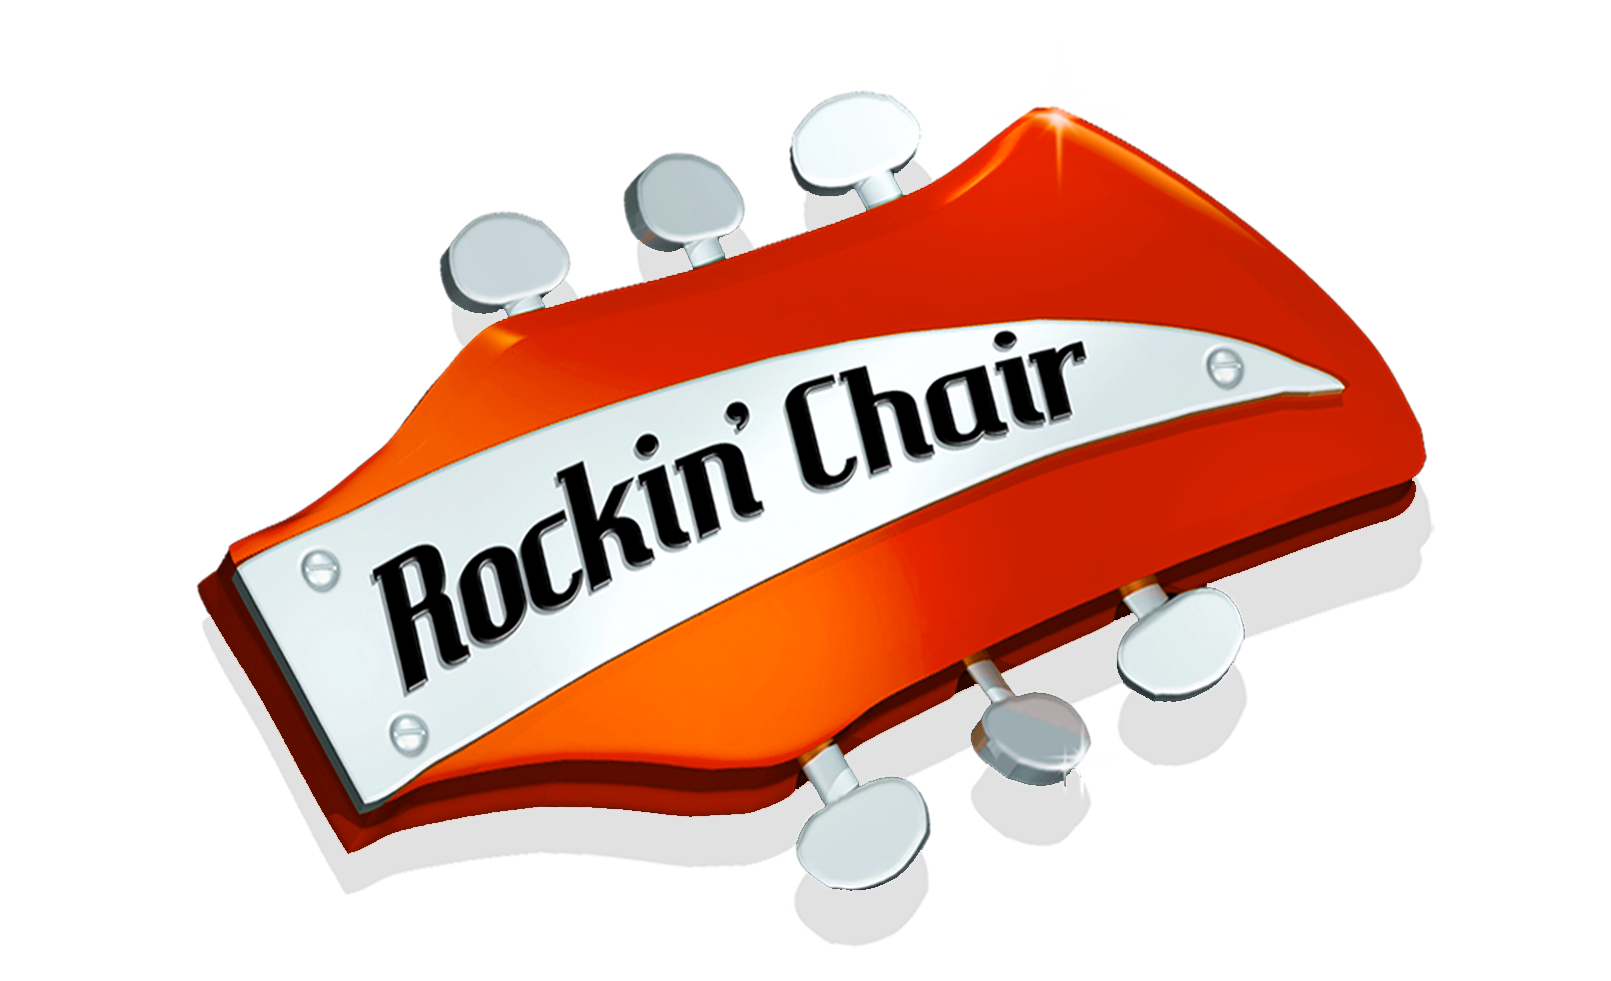 Rockin' Chair&nbsp;&nbsp;<br><br>